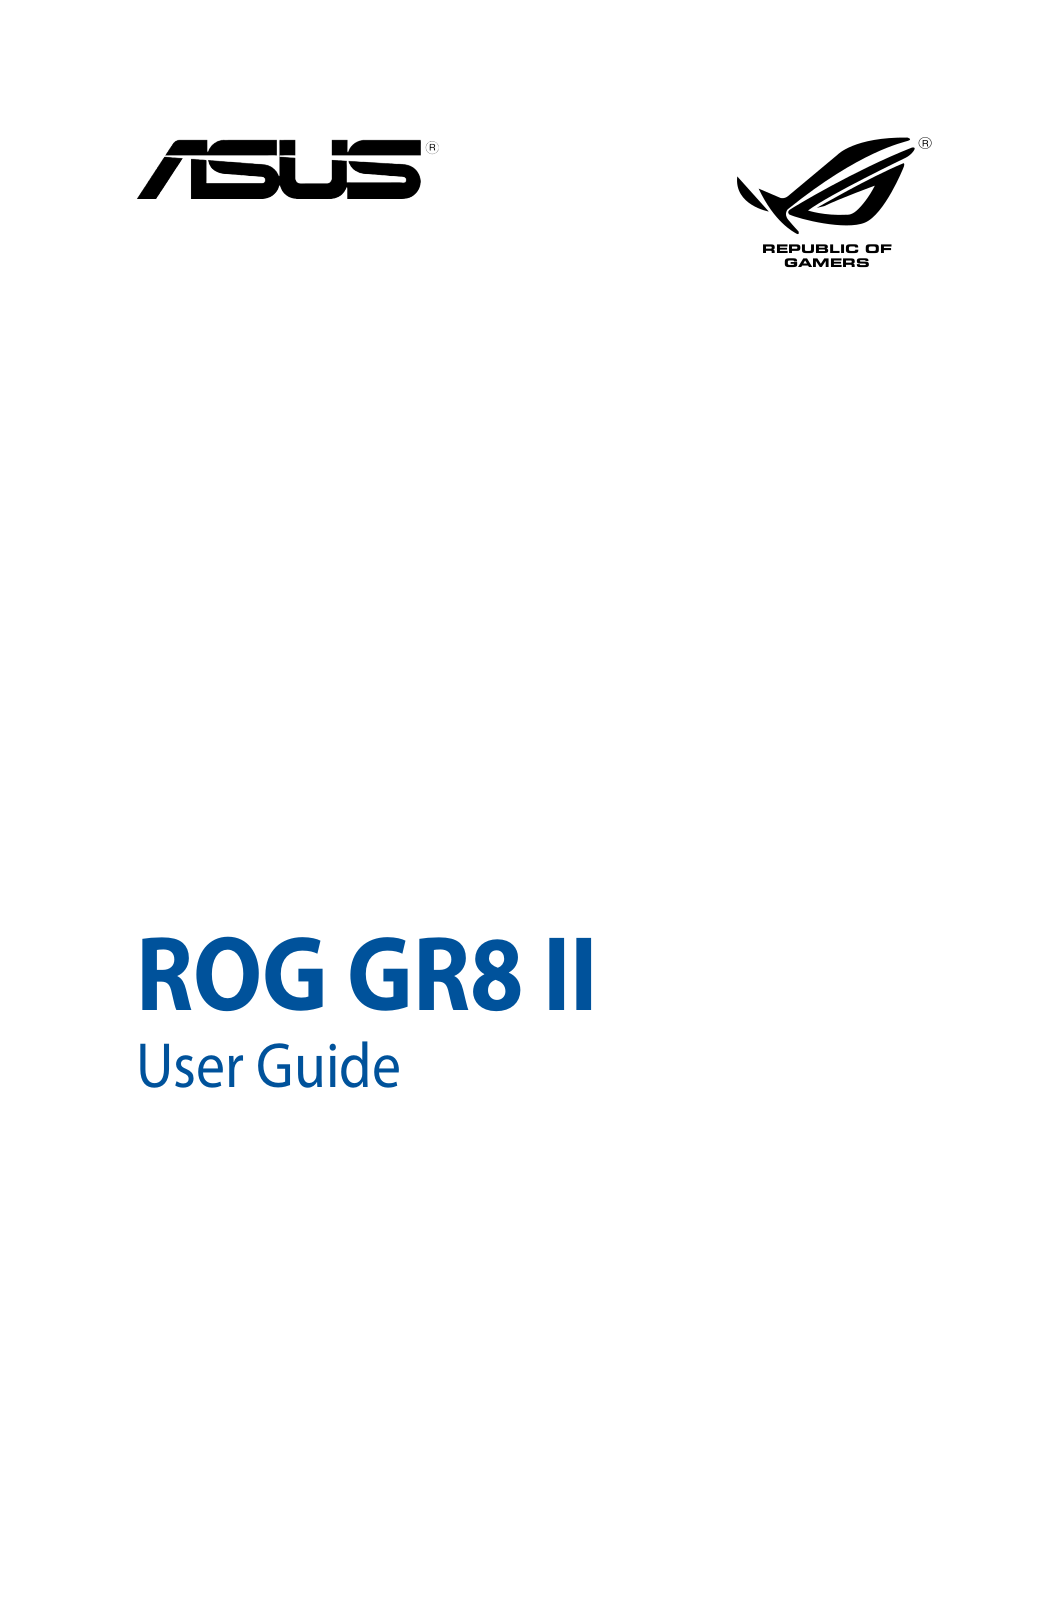 Asus ROG GR8 II User Manual